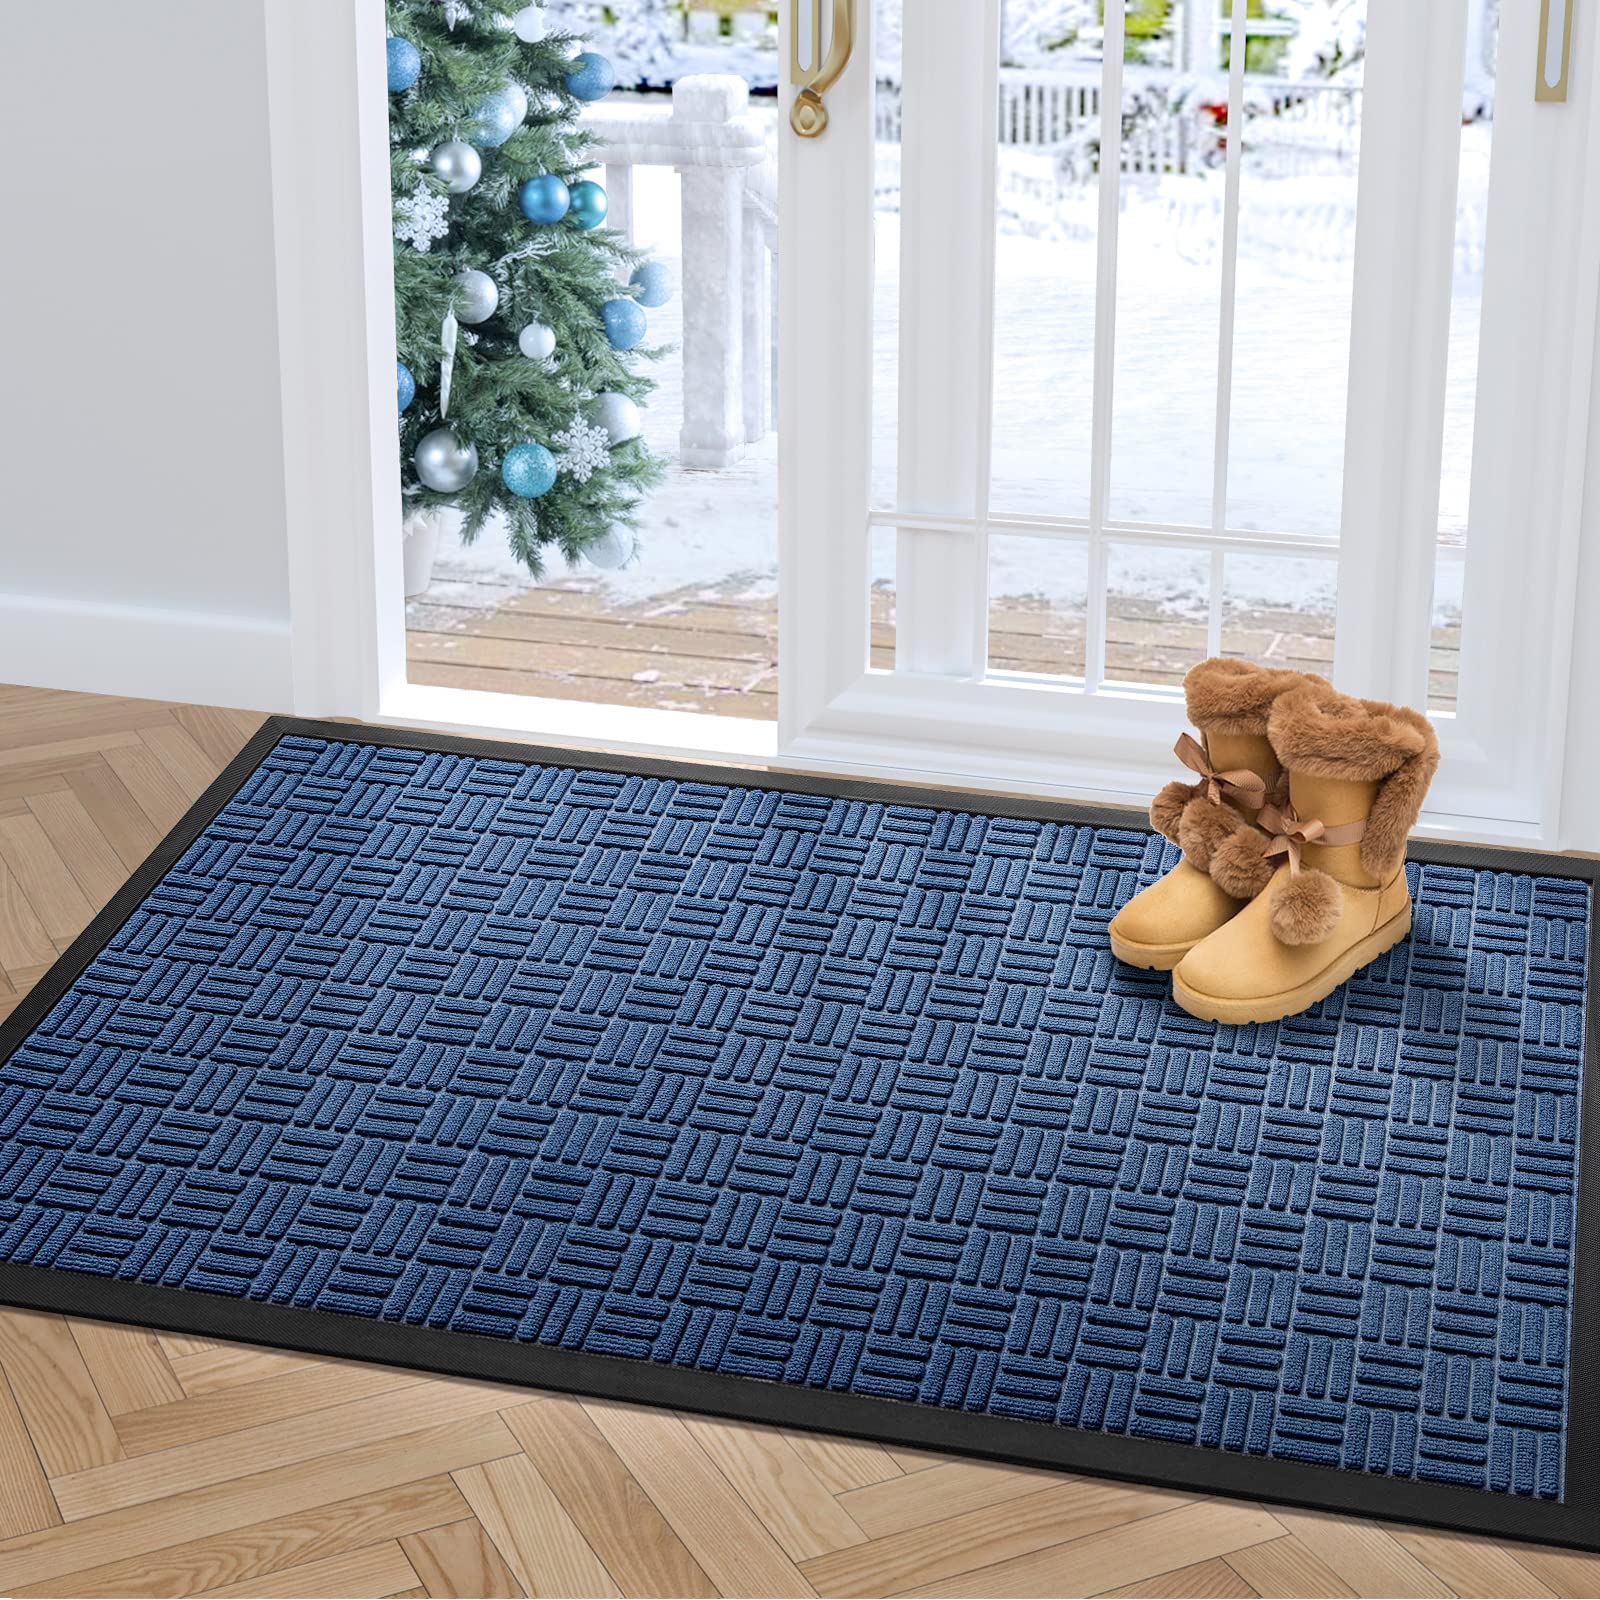 DEXI Large Door Mat Front Indoor Outdoor Doormat,Heavy Duty Rubber Outside Rug for Entryway Patio garage,4x6,Navy Blue